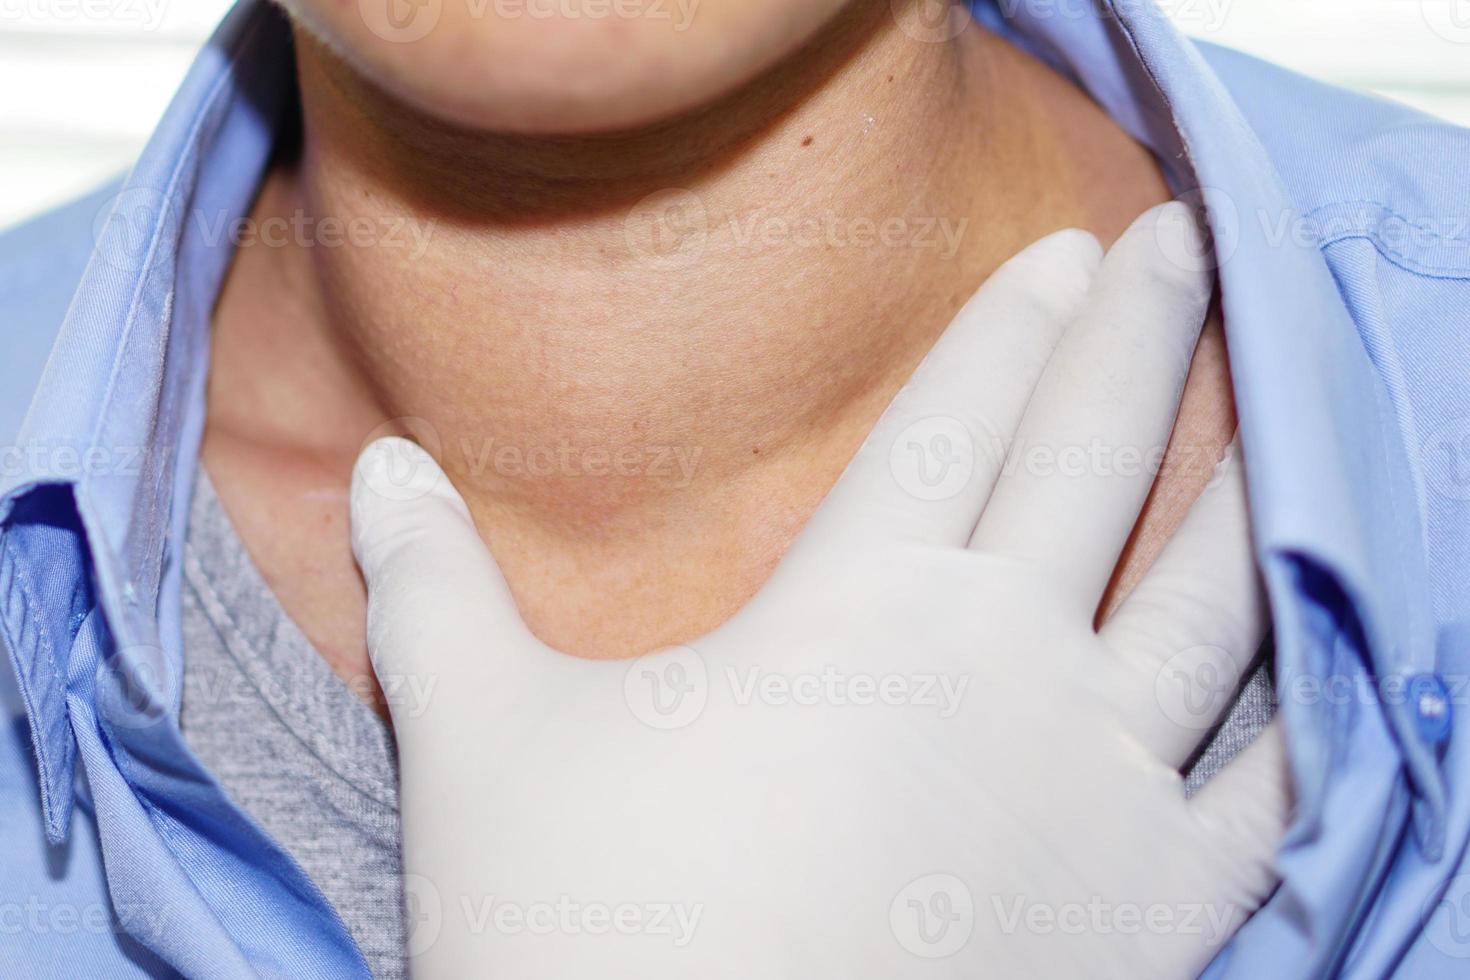 un patient asiatique a une hypertrophie anormale de la thyroïde au niveau de la gorge photo